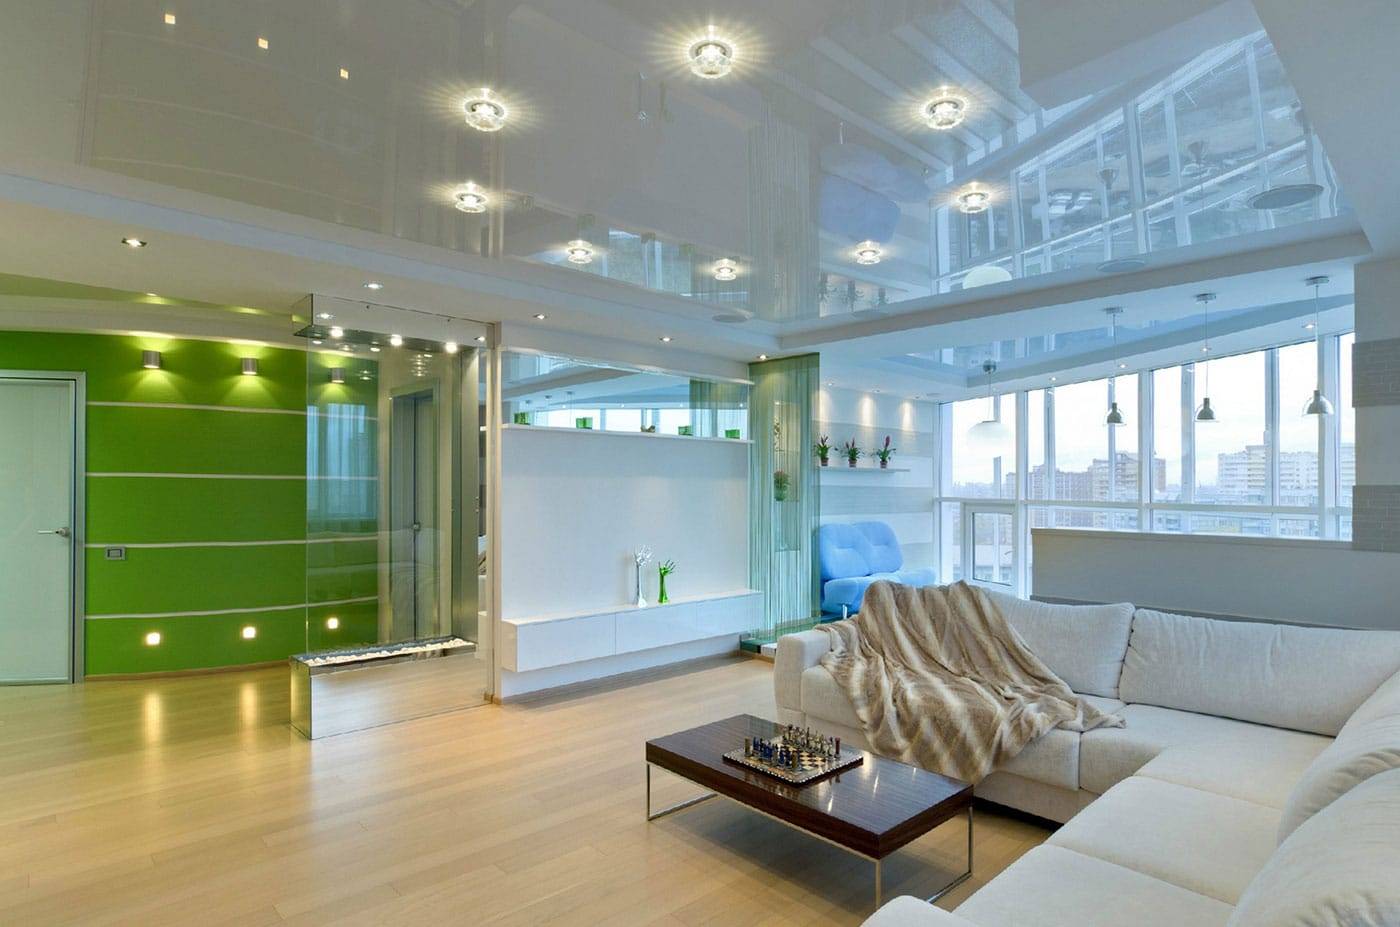 Освещение натяжных потолков в квартире: варианты подсветки, современный дизайн